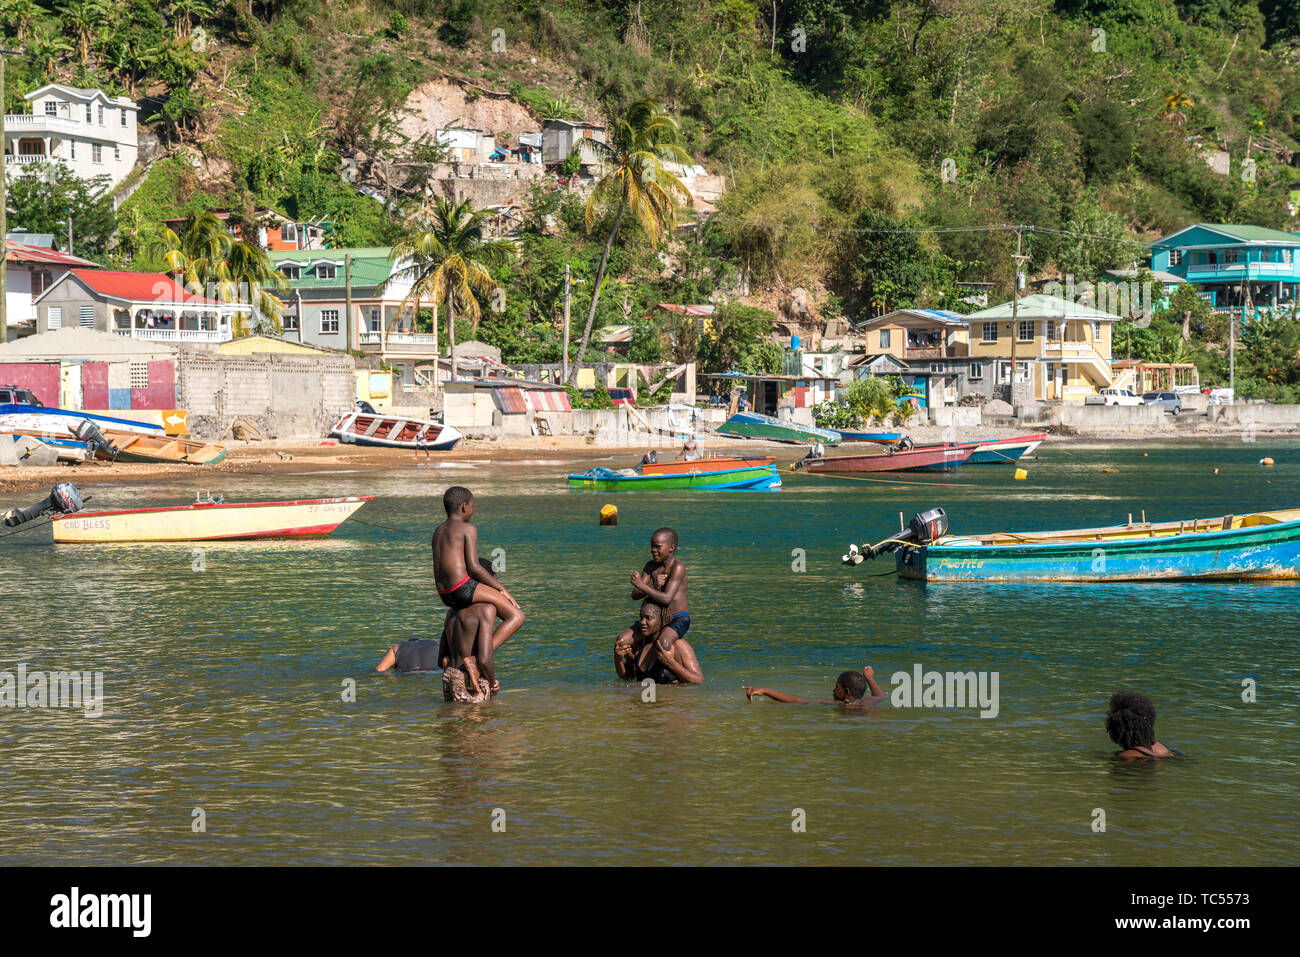 Einheimische baden am Strand von Soufriere, Dominica, Karibik, Mittelamerika | locali per divertirsi in spiaggia in Soufriere, Dominica, Caraibi, Cen Foto Stock